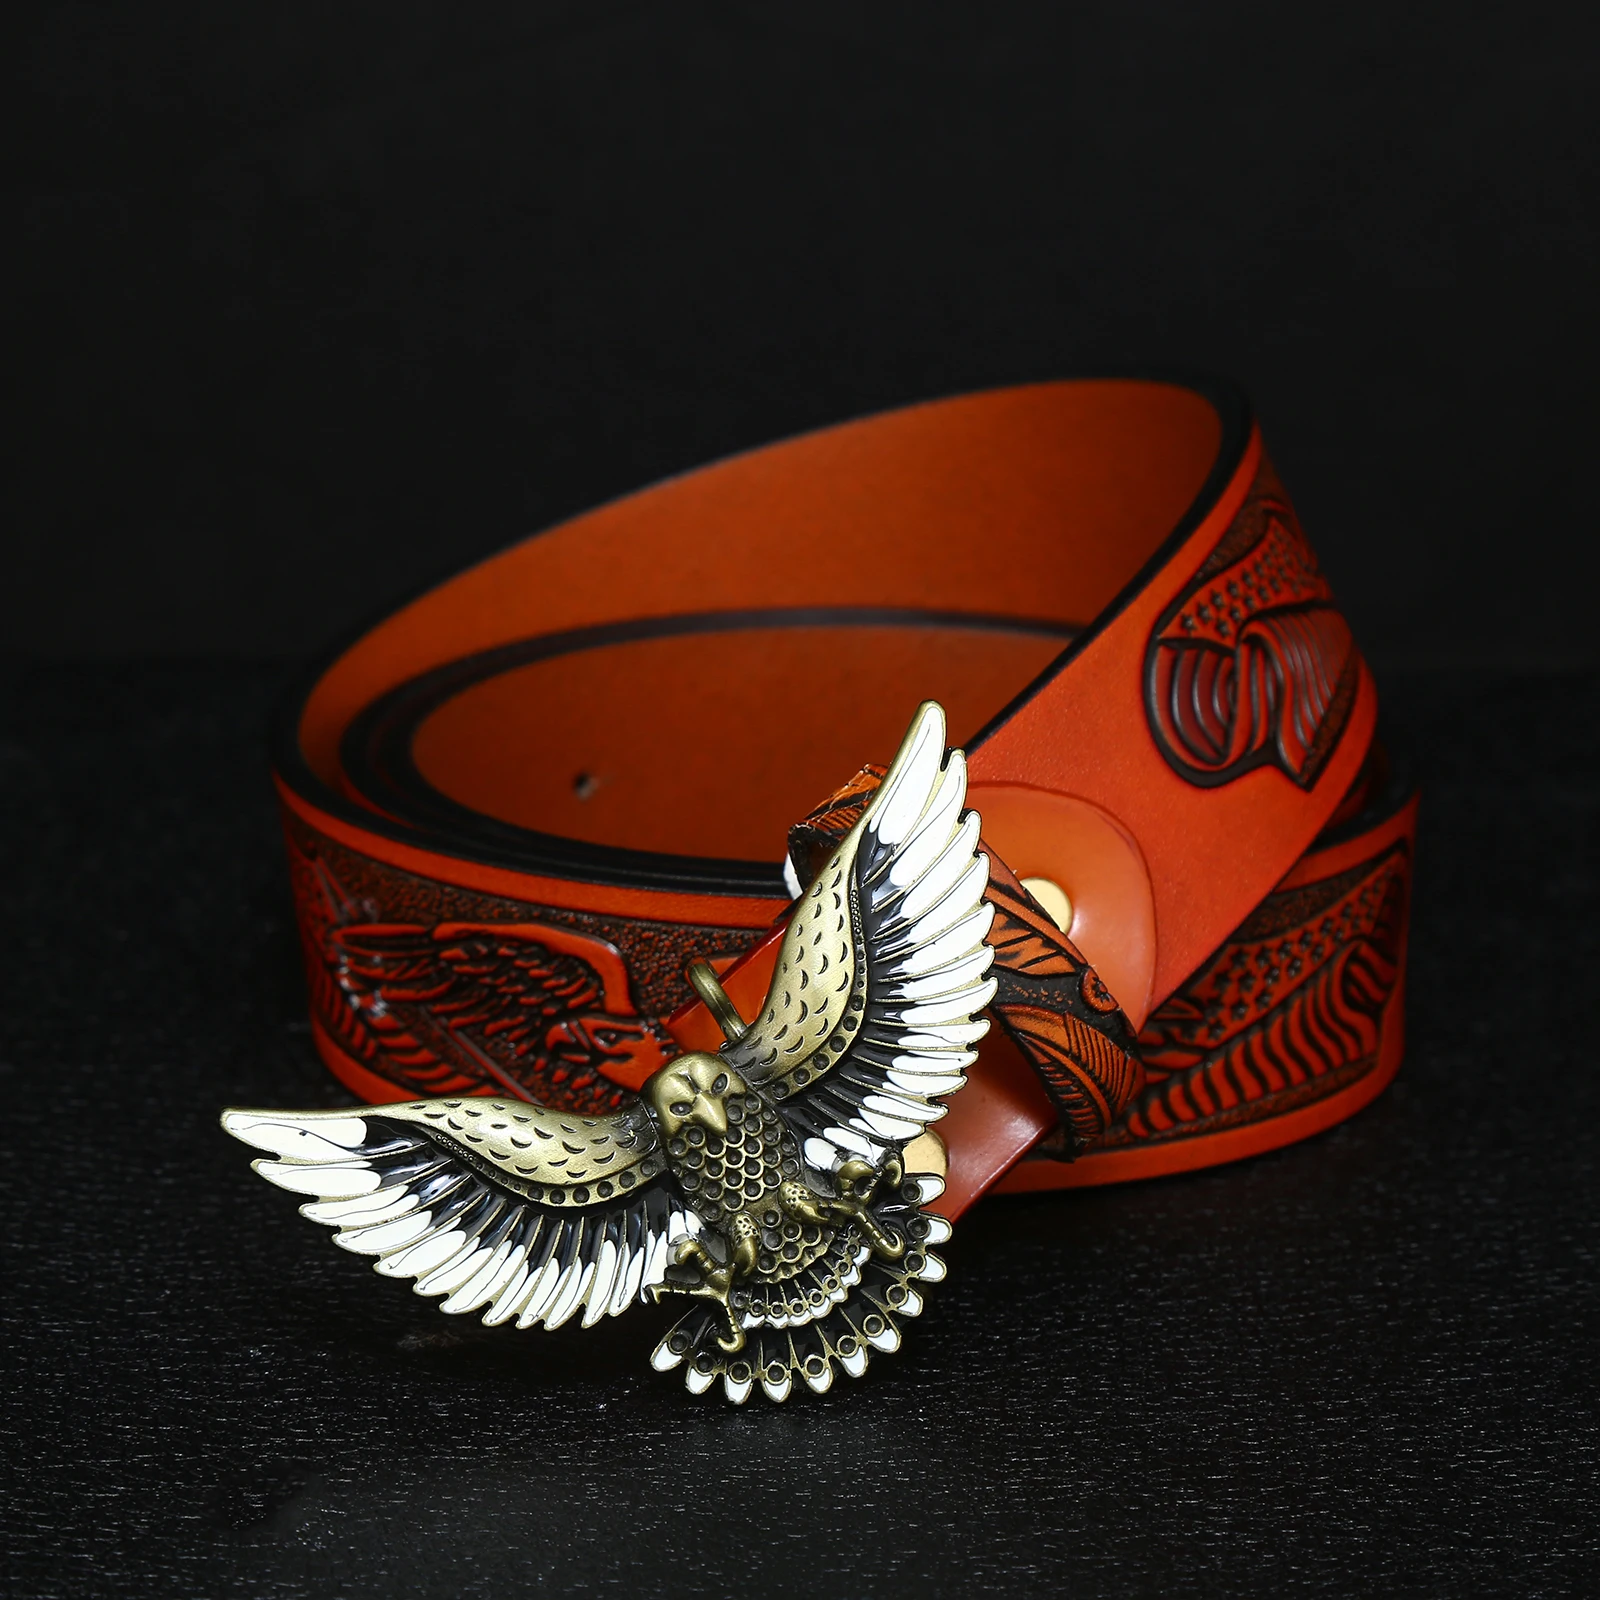 Western denim zinc alloy eagle belt buckle with embossed leather belt for men's jeans decoration